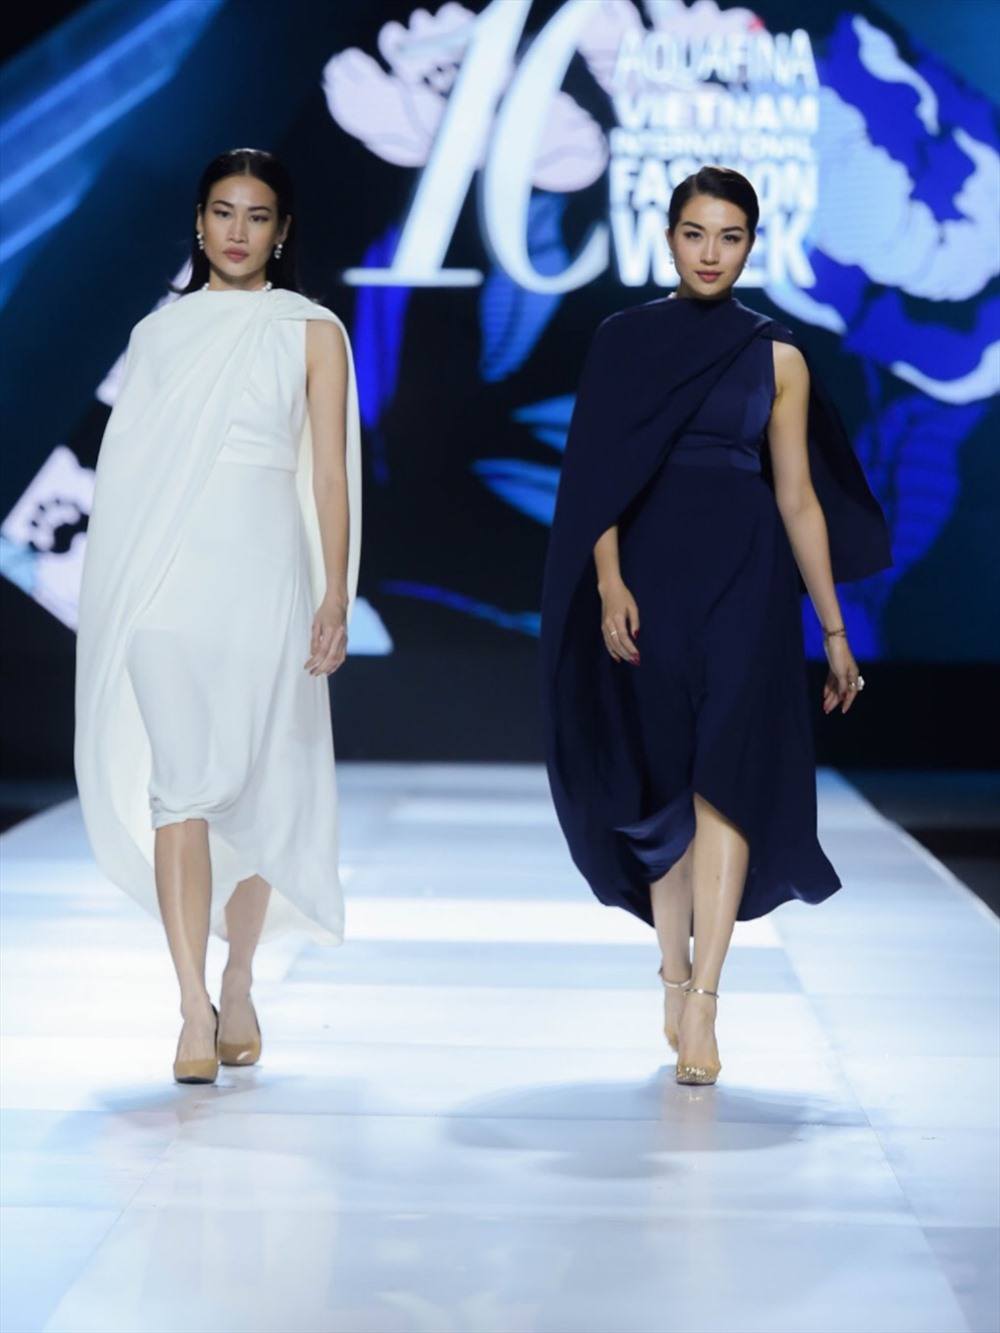 Xuất hiện mở màn cho bộ sưu tập là Á hậu Lệ Hằng và người mẫu Thanh Trúc. Bộ trang phục mang phong cách thiết kế phóng khoáng tạo nên điều yên nhất trong tâm hồn.